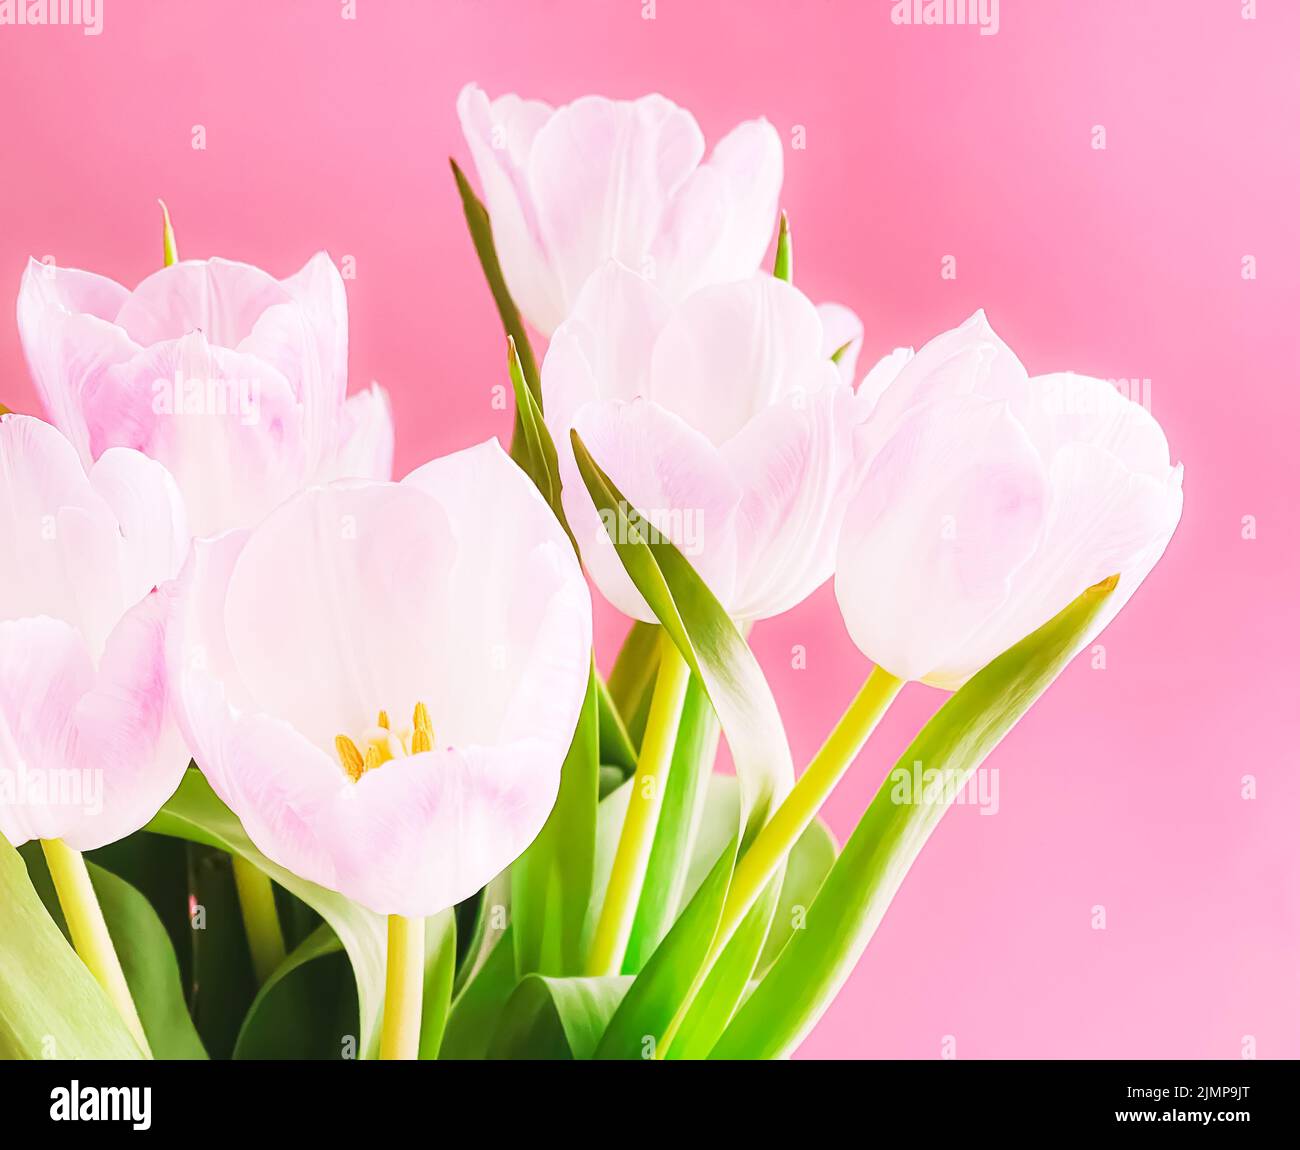 Ramo de tulipanes blancos sobre fondo rosa, flores hermosas y concepto de regalo floral Foto de stock